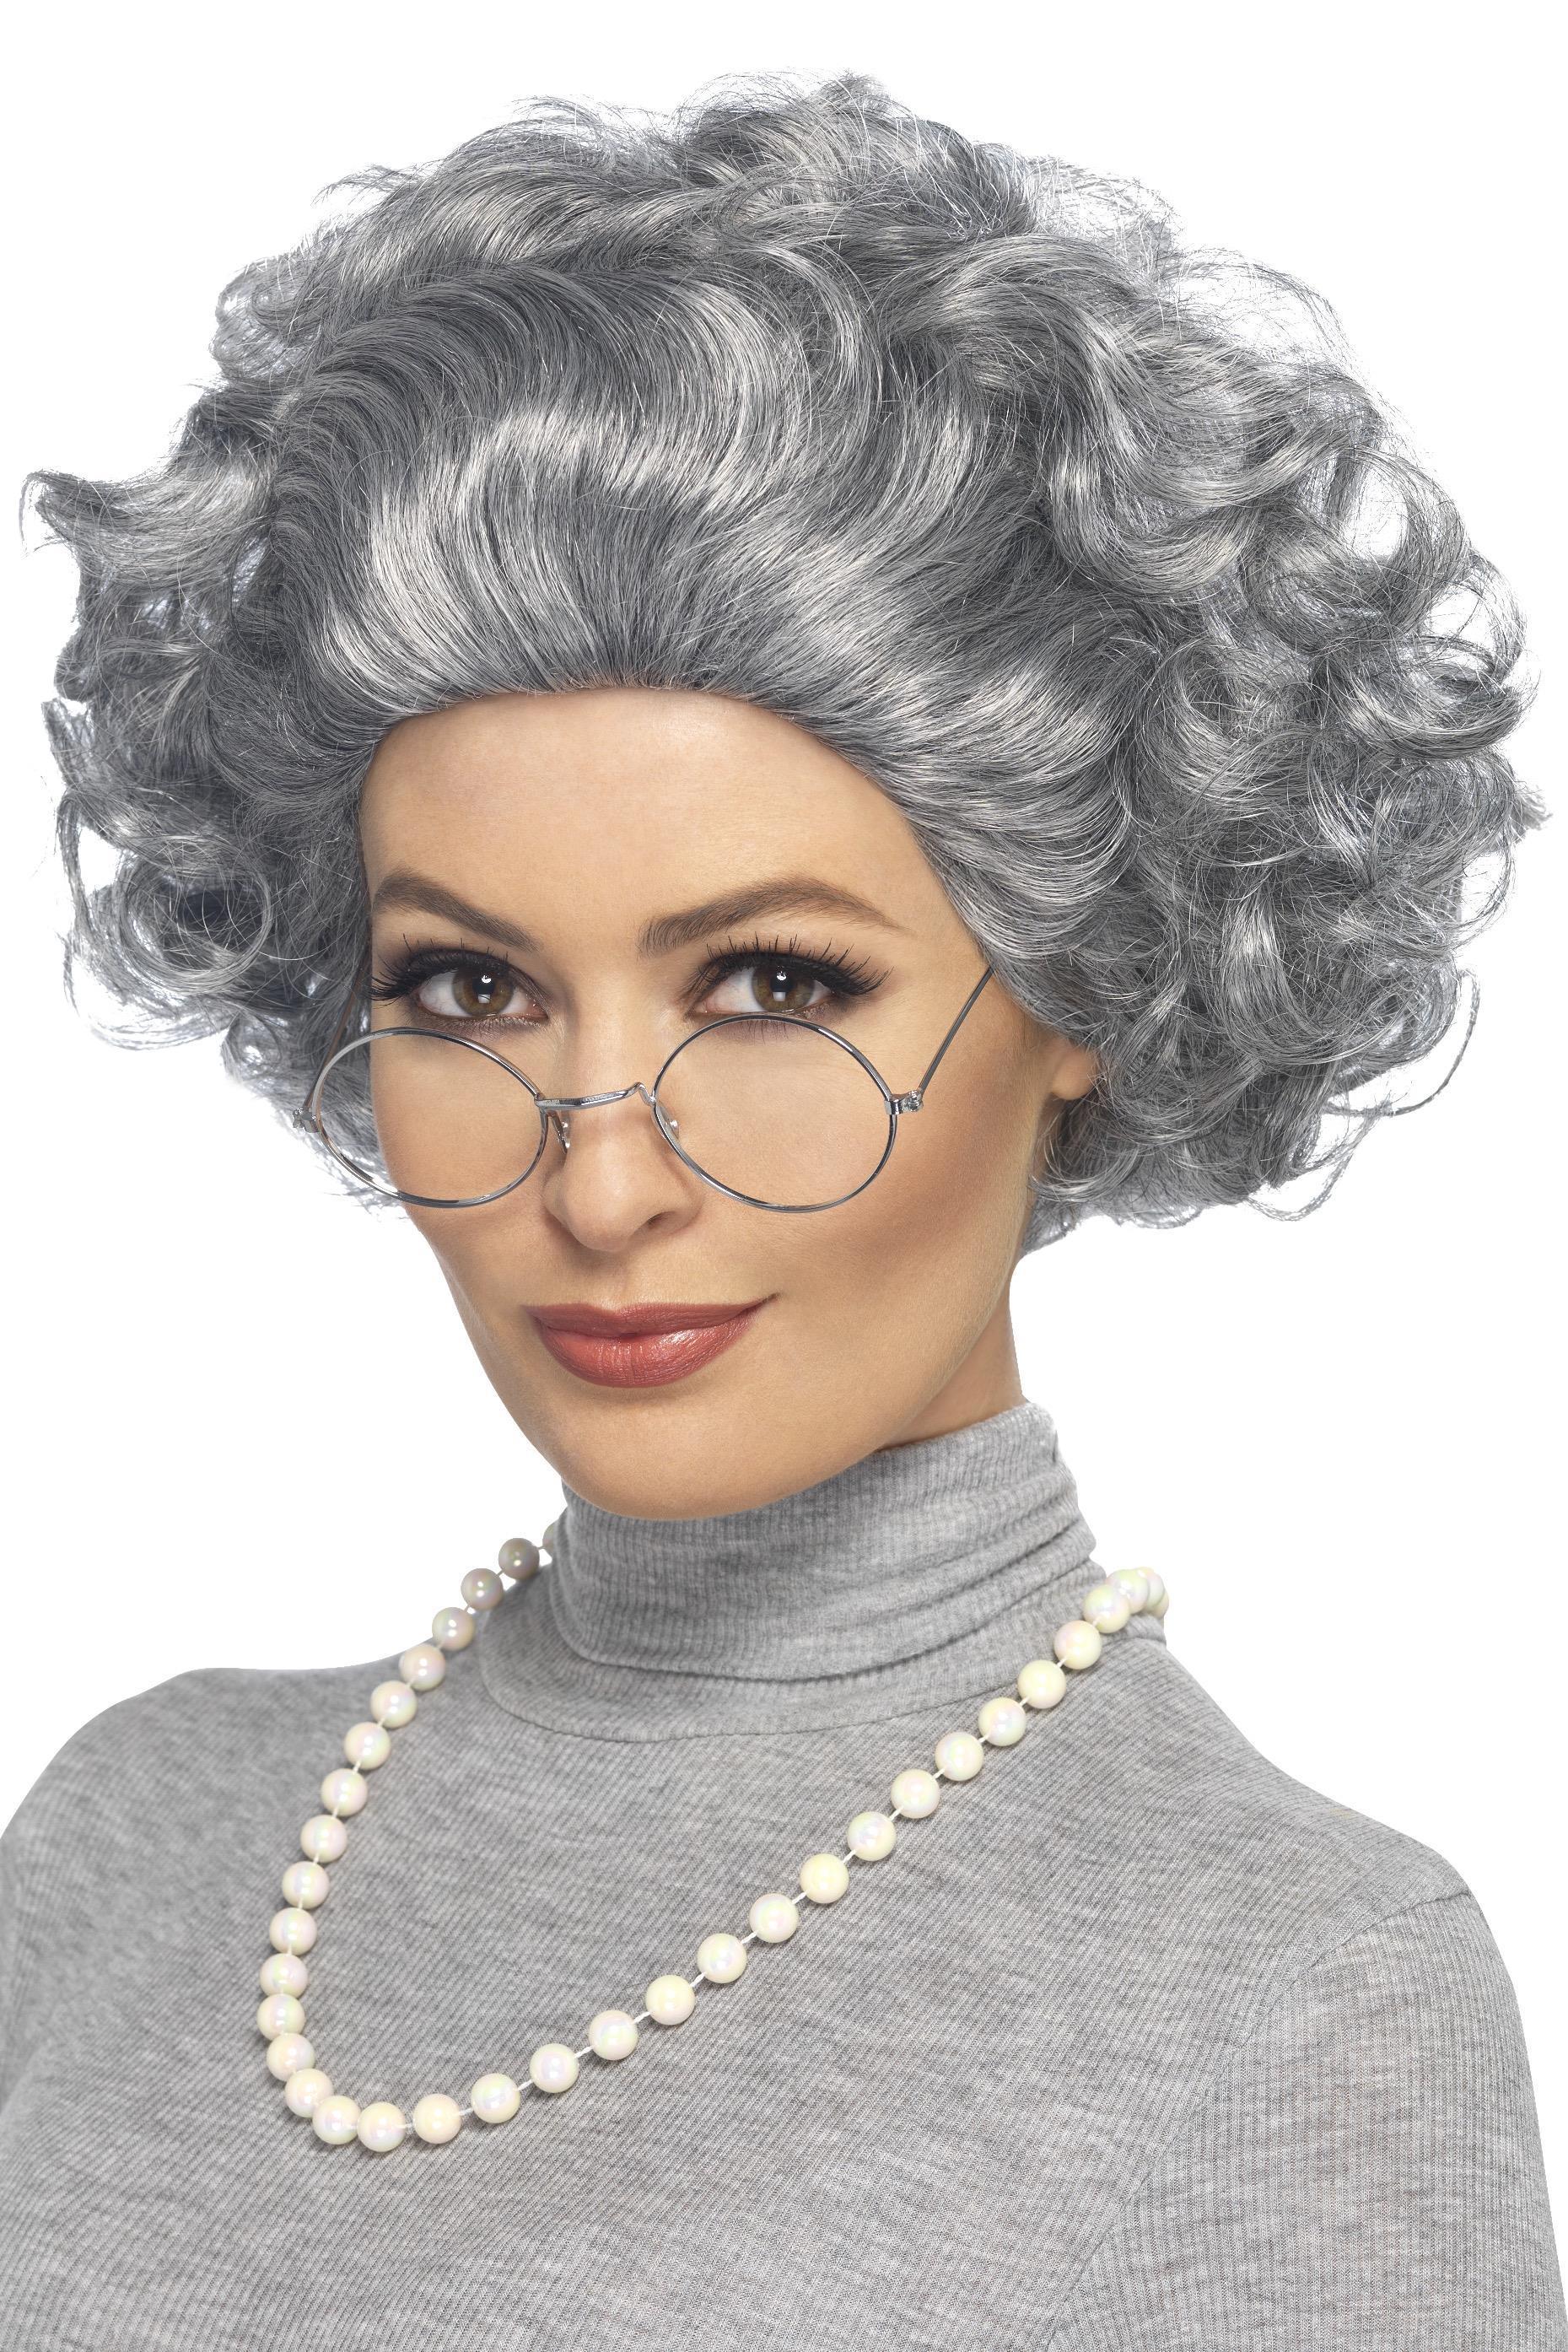 Granny Wig Kit